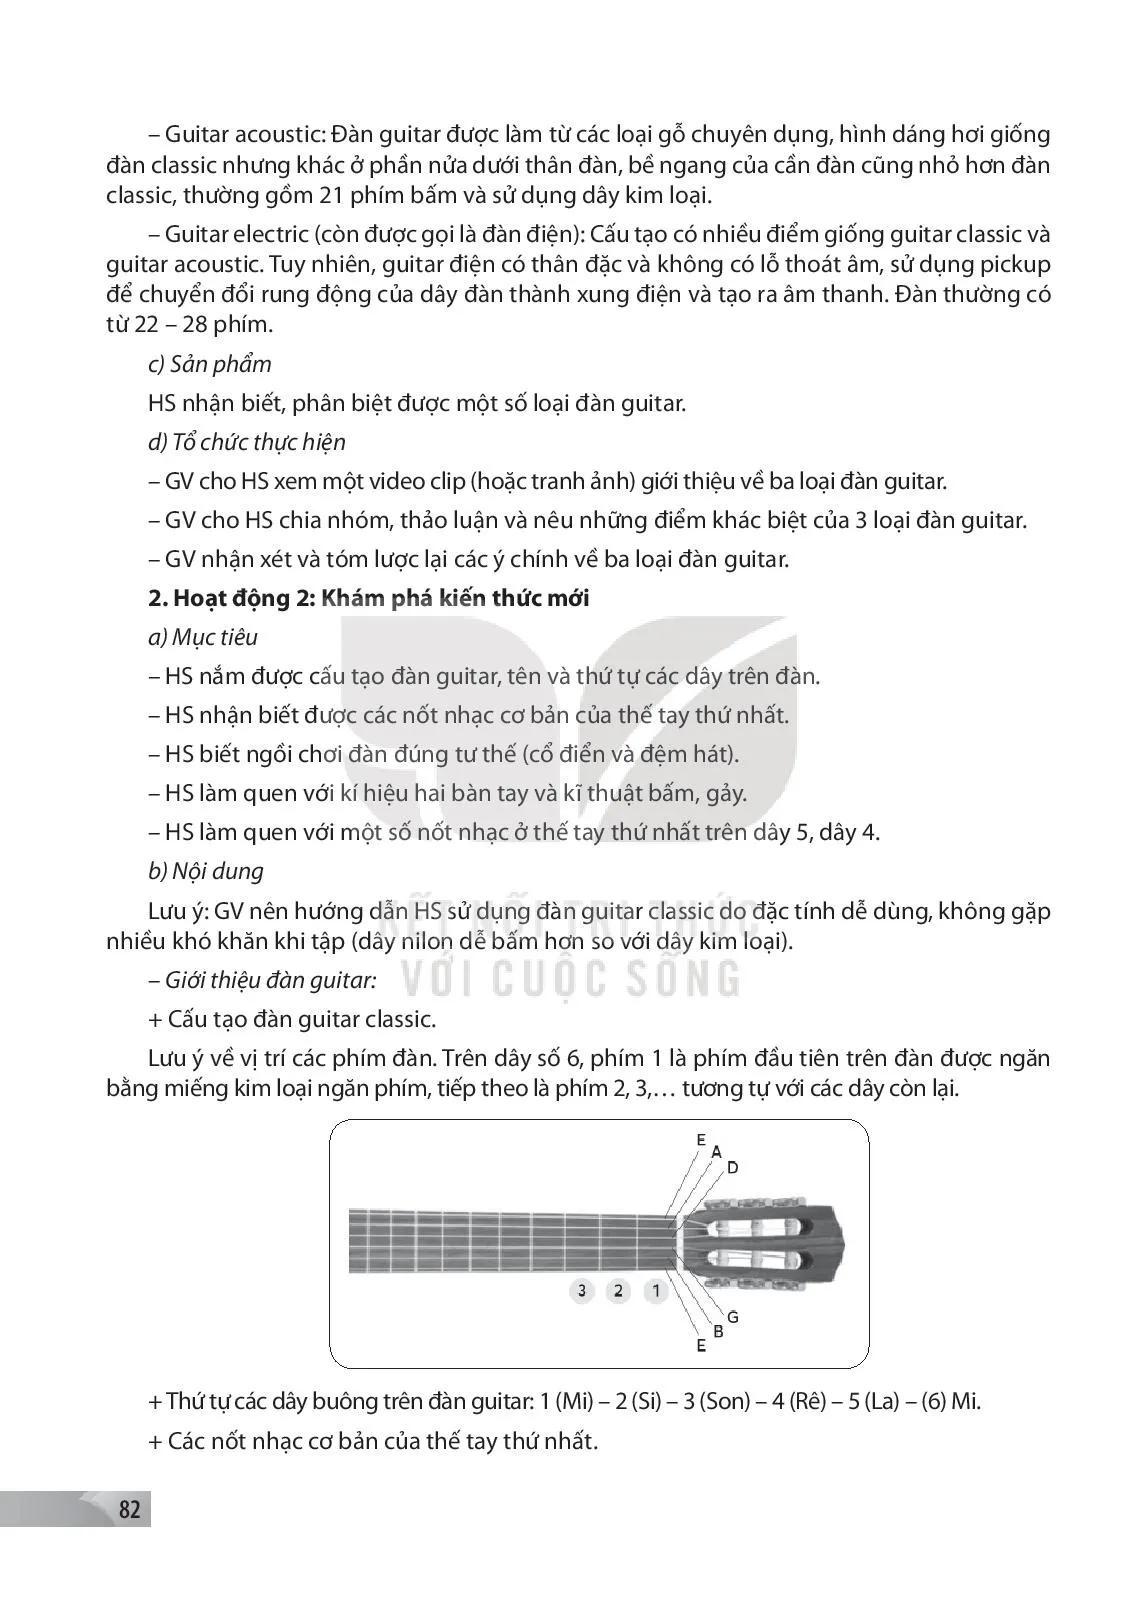 Bài 1. Giới thiệu đàn guitar và kĩ thuật bấm, gảy trên dây 5, dây 4